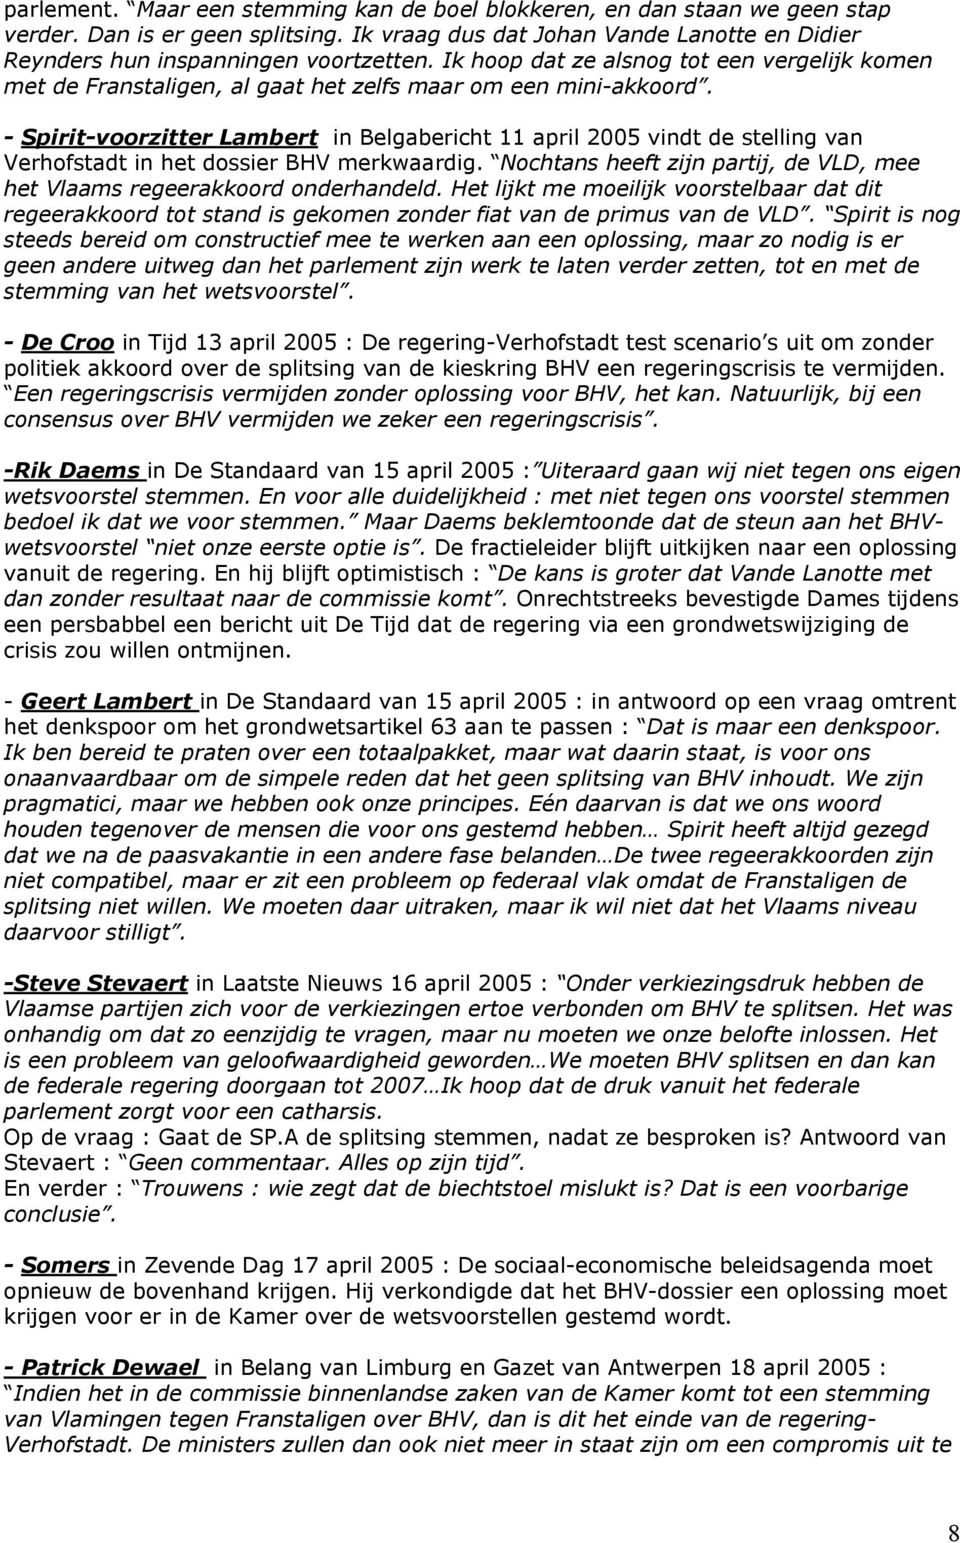 - Spirit-voorzitter Lambert in Belgabericht 11 april 2005 vindt de stelling van Verhofstadt in het dossier BHV merkwaardig.